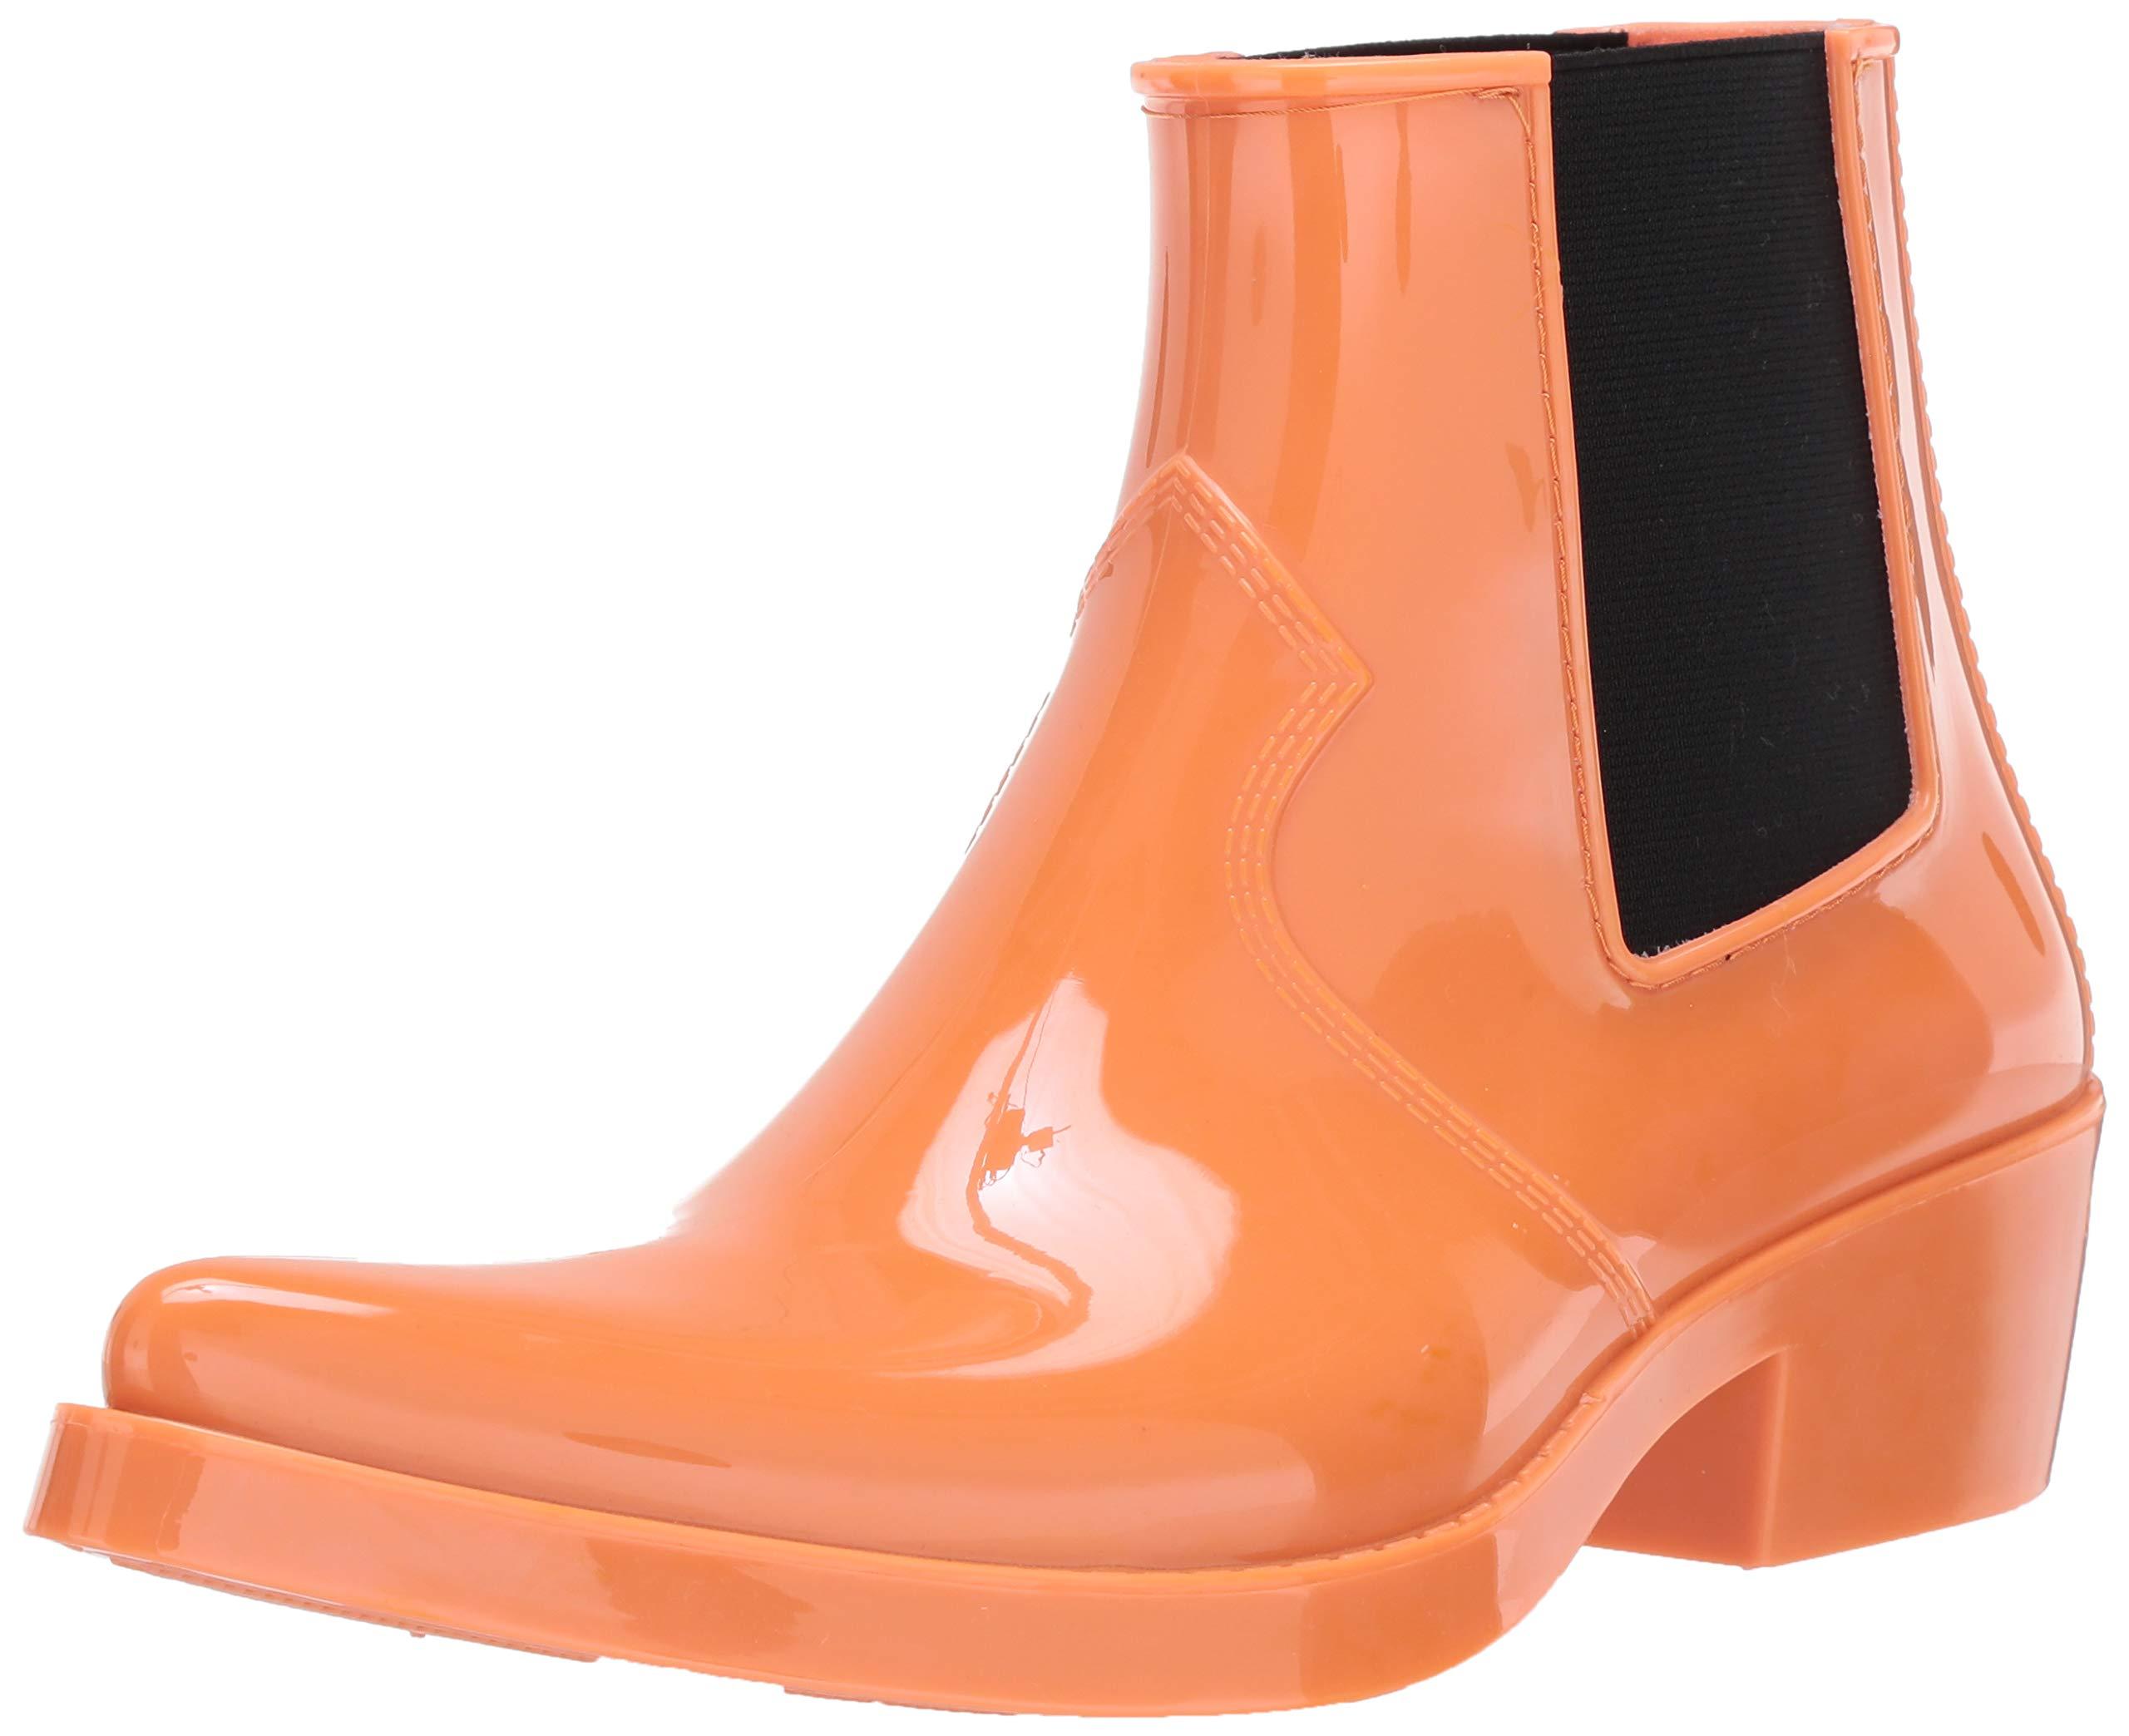 Calvin Klein Rubber Carol Boots in Orange Tiger (Orange) - Lyst